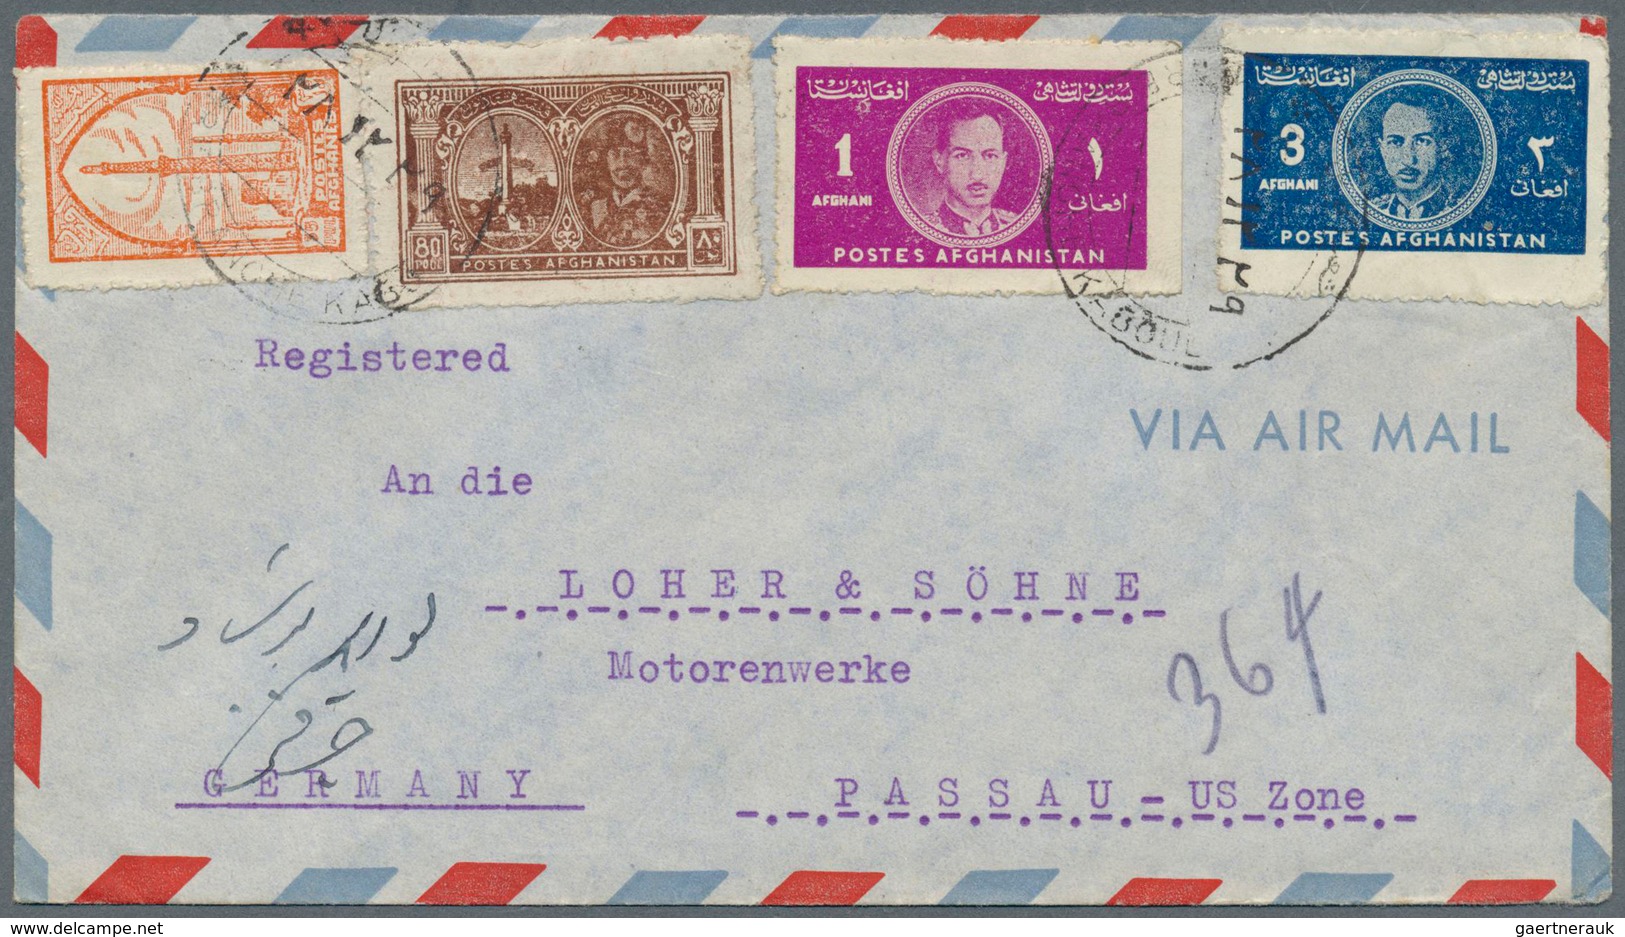 Übersee: 1870/1970 (ca.), rd. 500 Briefe und Karten, dabei 70 großformatige Briefe Südwestafrika mit